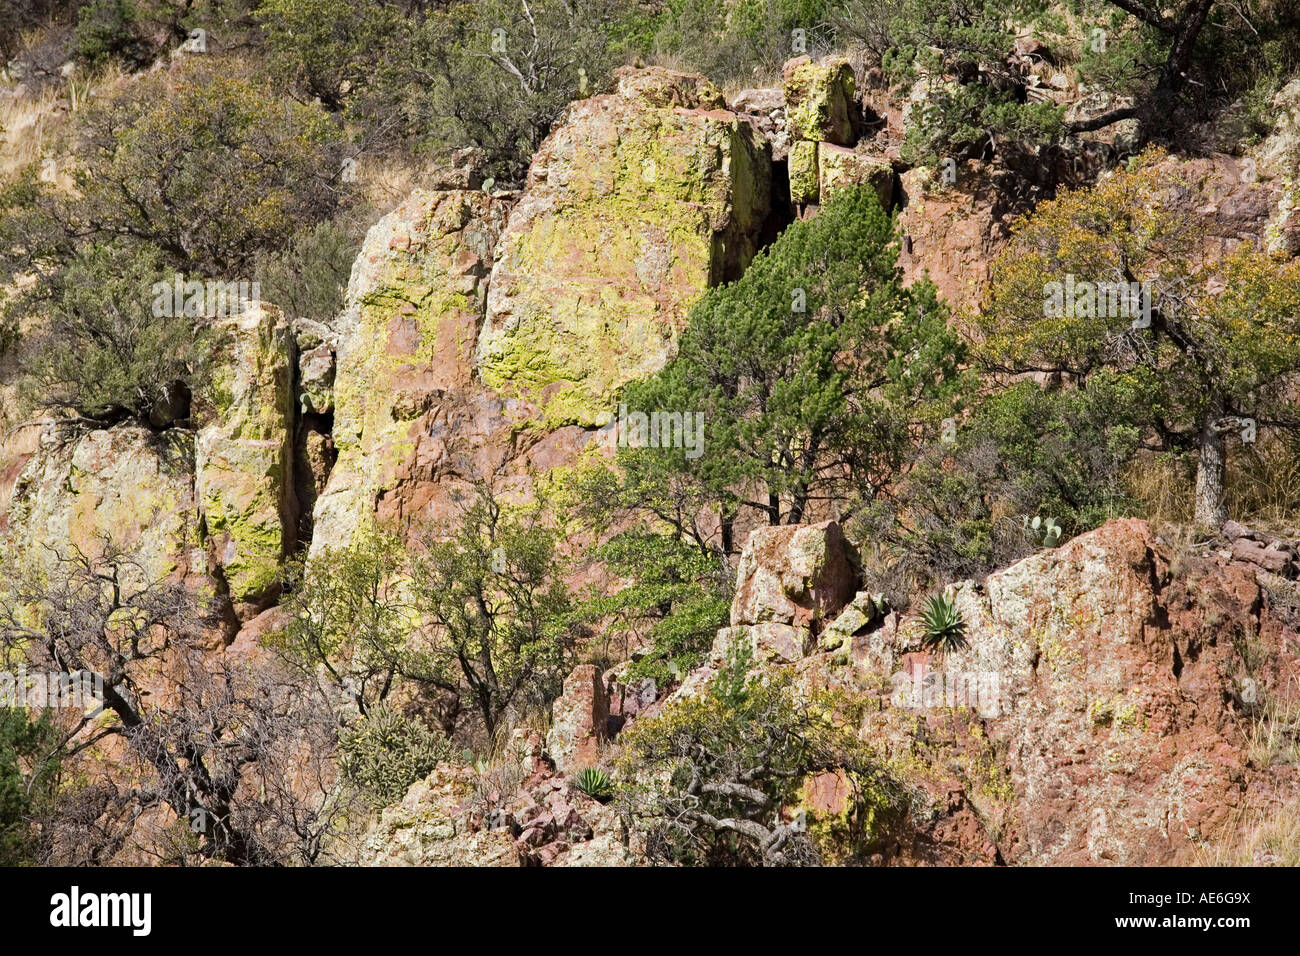 Le lichen couvre les affleurements rocheux dans les contreforts de l'Huachuca Mountains près de Sierra Vista, Arizona Banque D'Images